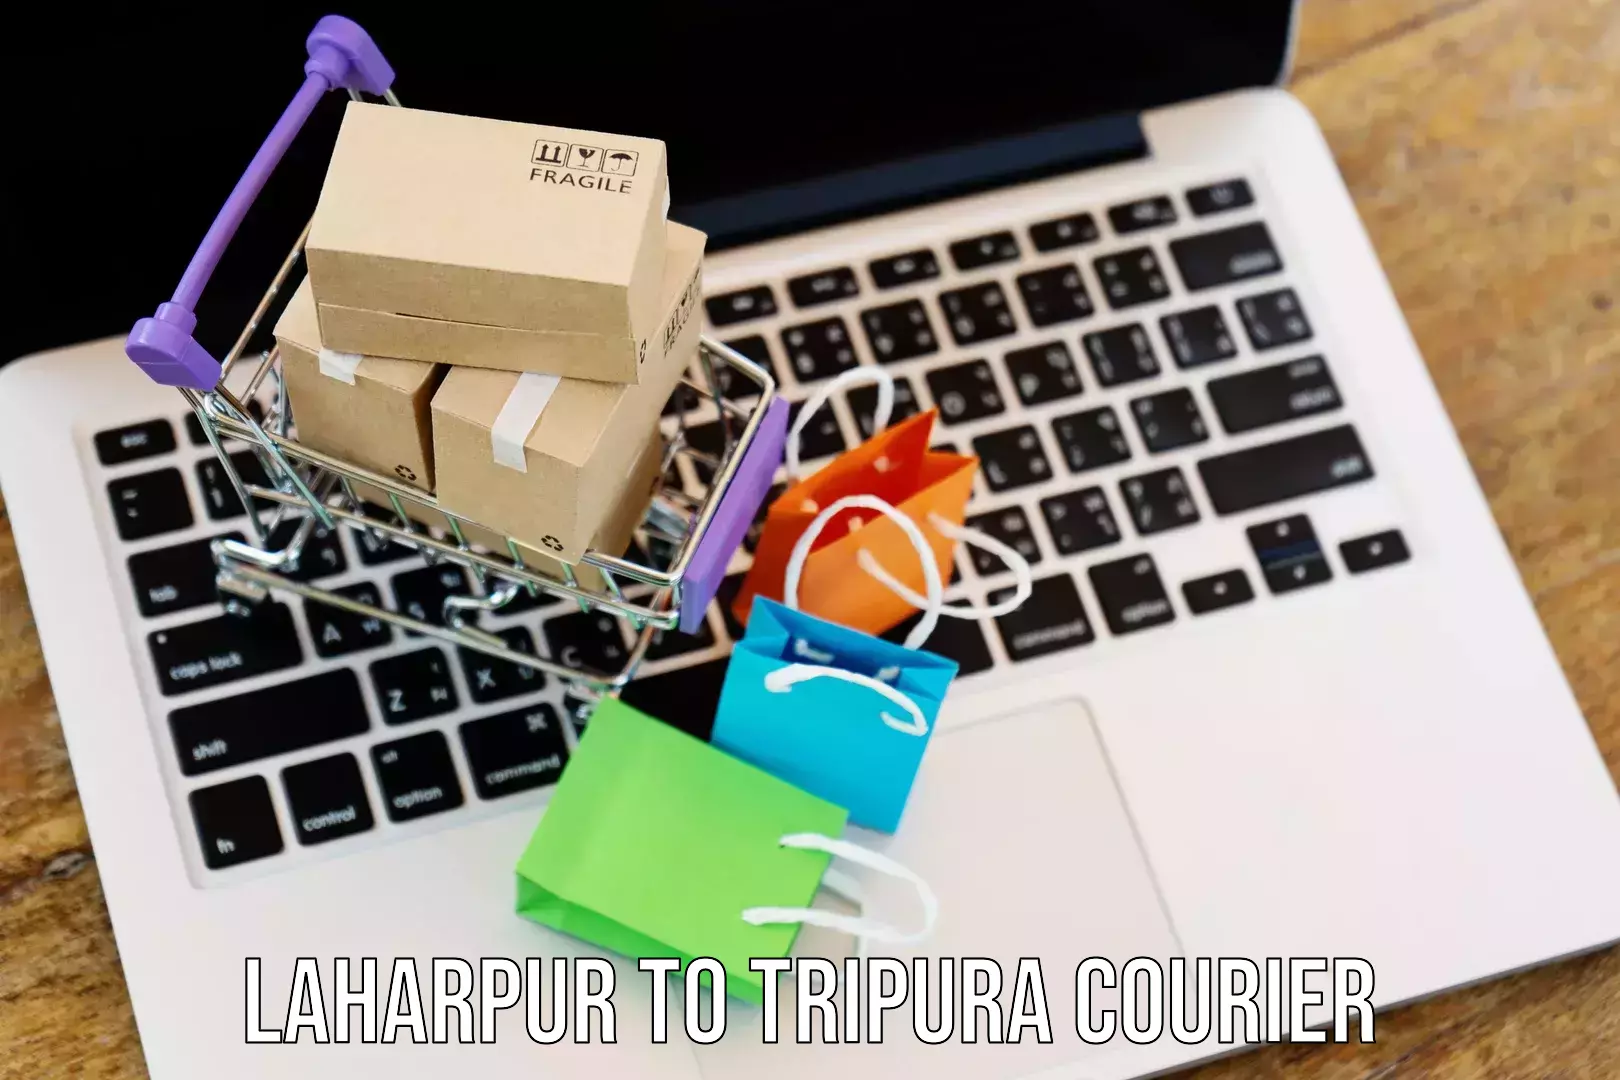 Courier service comparison Laharpur to South Tripura